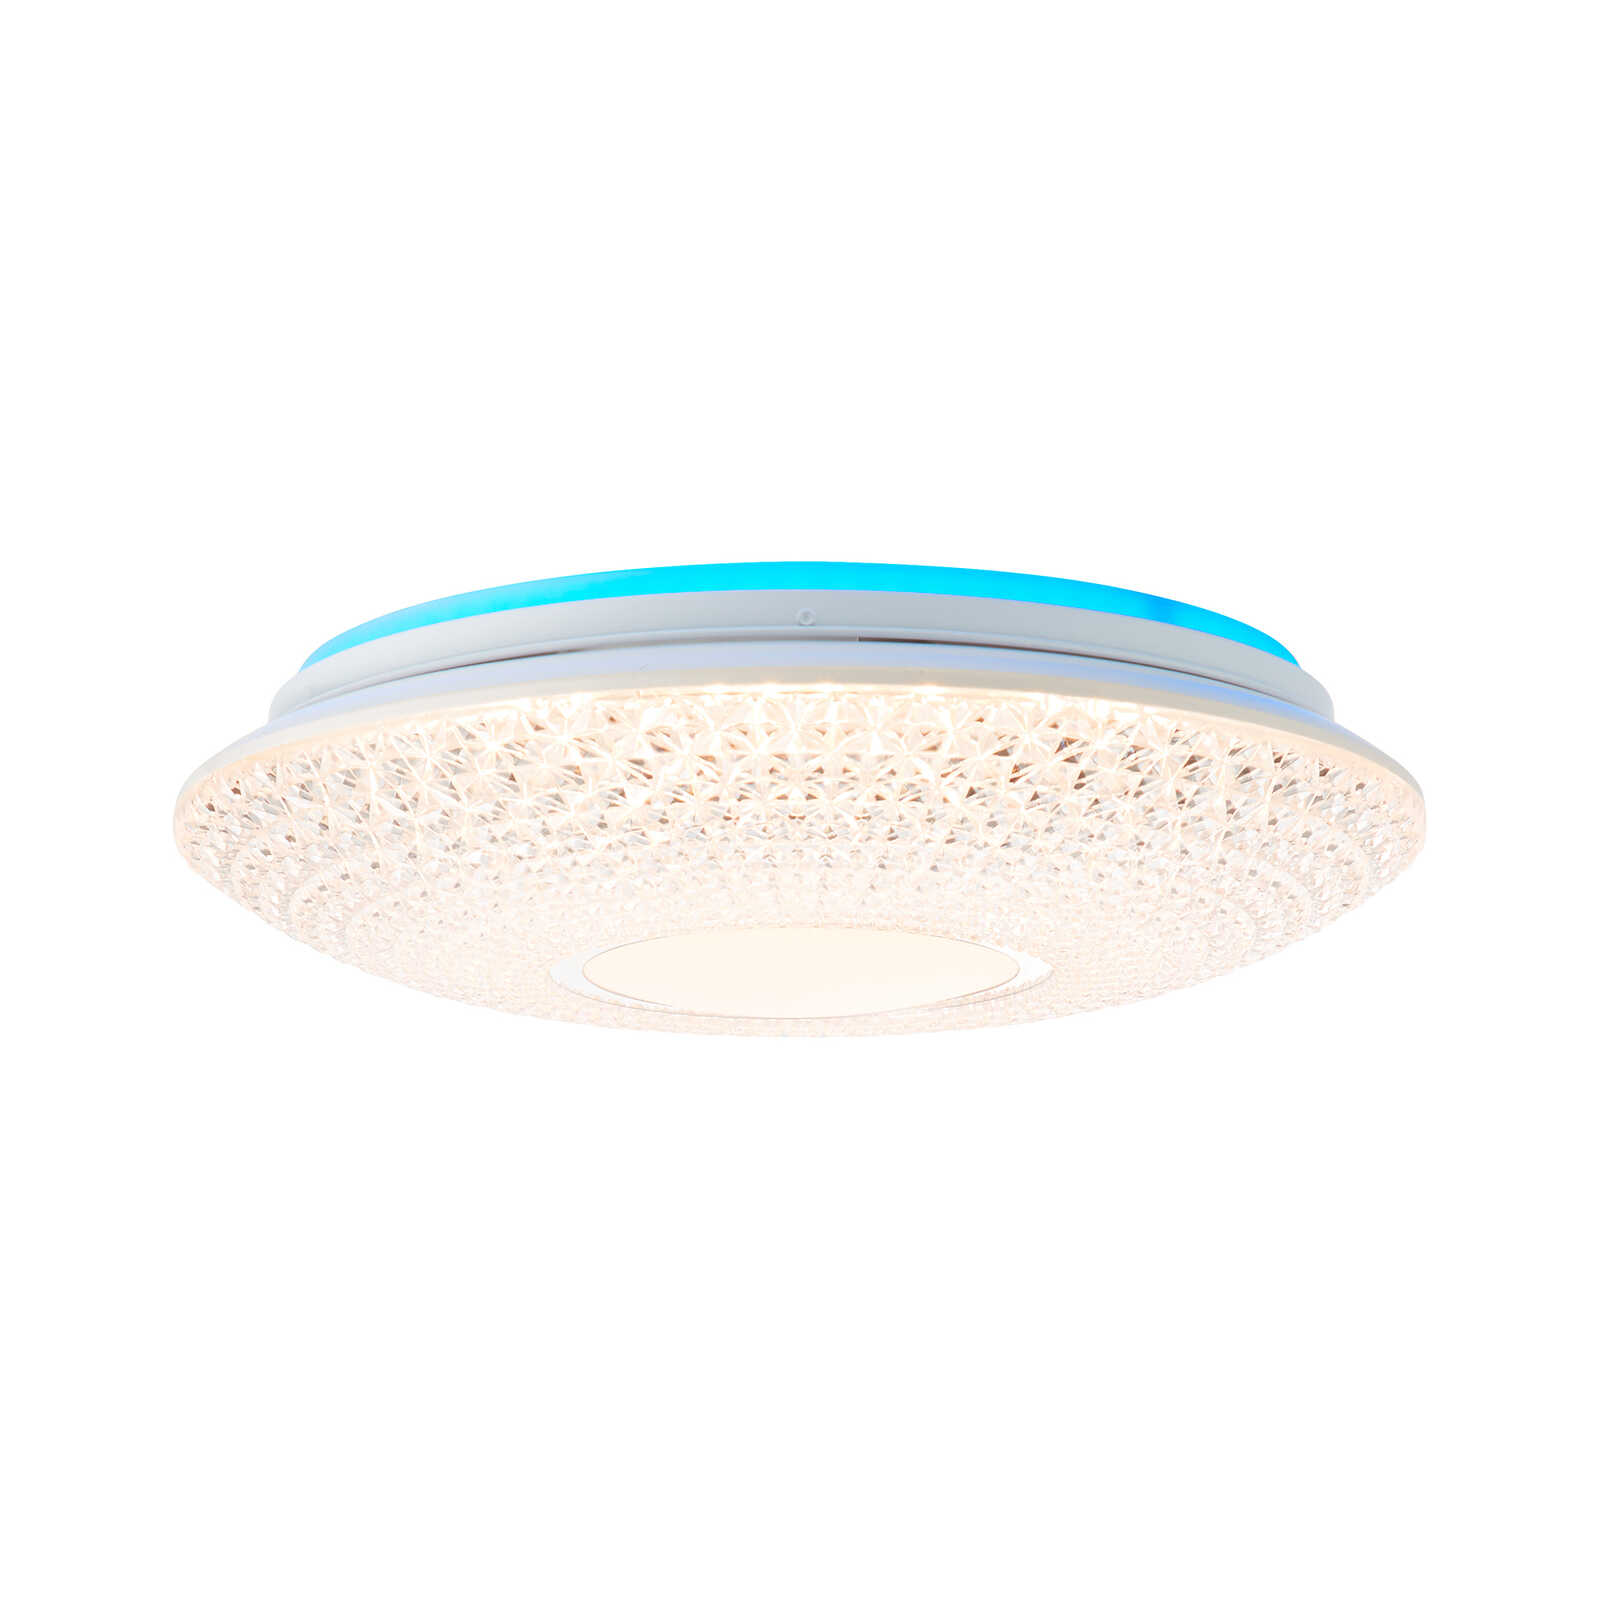 Plastic ceiling light - Leandra 1 - White
